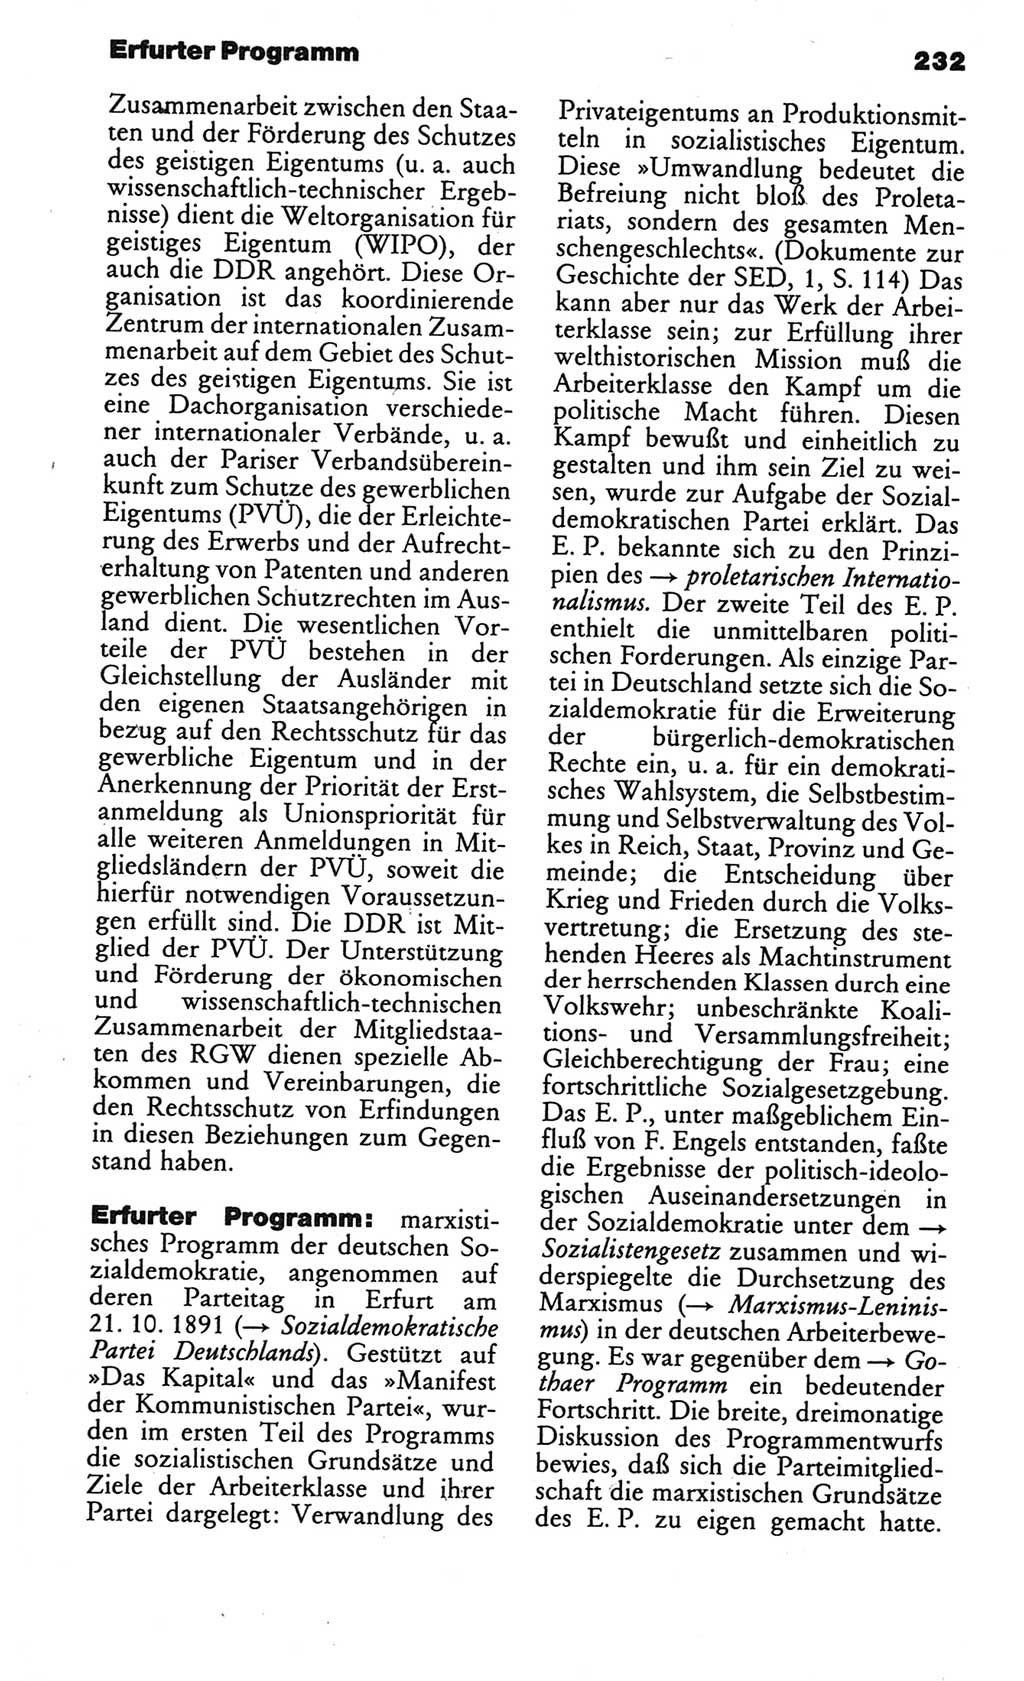 Kleines politisches Wörterbuch [Deutsche Demokratische Republik (DDR)] 1986, Seite 232 (Kl. pol. Wb. DDR 1986, S. 232)